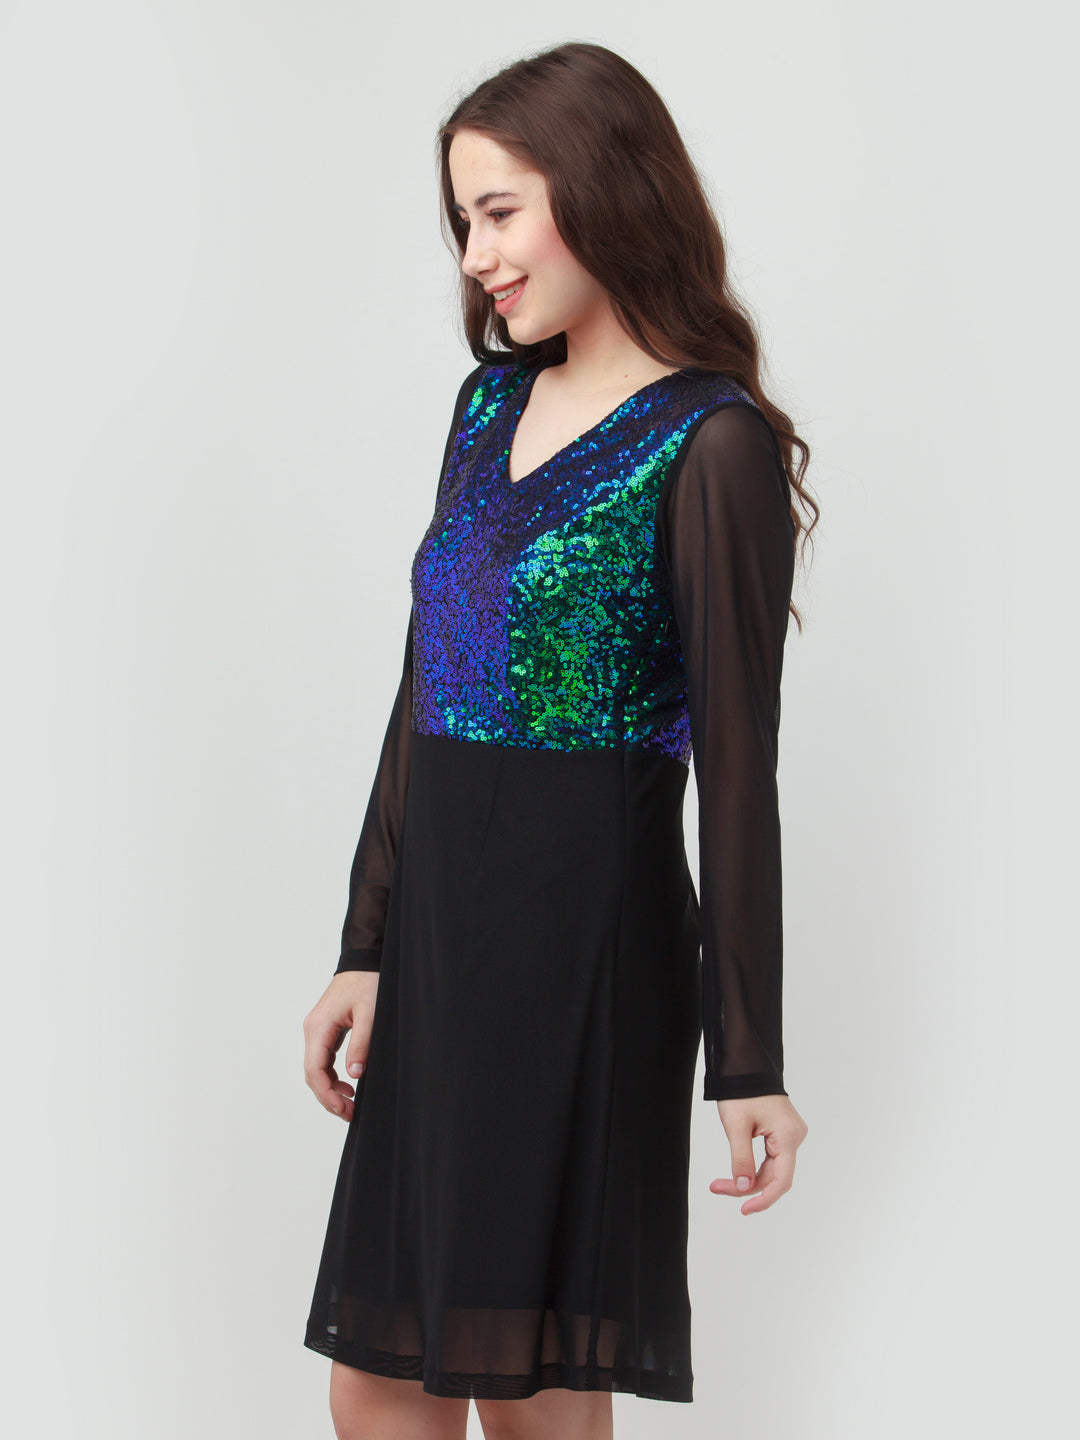 Black Embellished Short Dress For Women